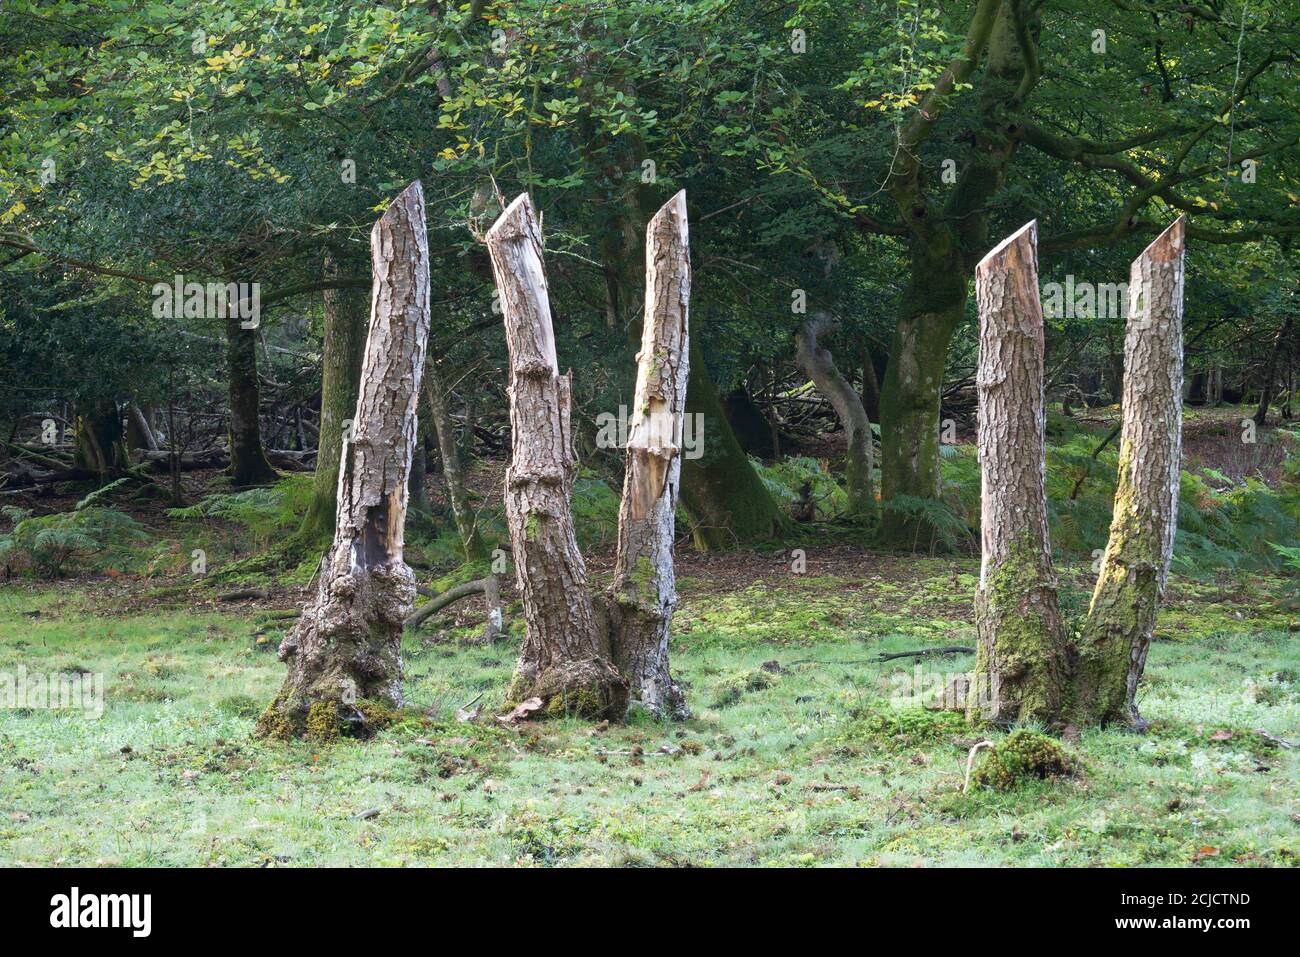 Ceppi di alberi che mostrano numeri romani 4 e 5 isolati. Presi a Minstead Woods, Lyndhurst, Inghilterra Foto Stock